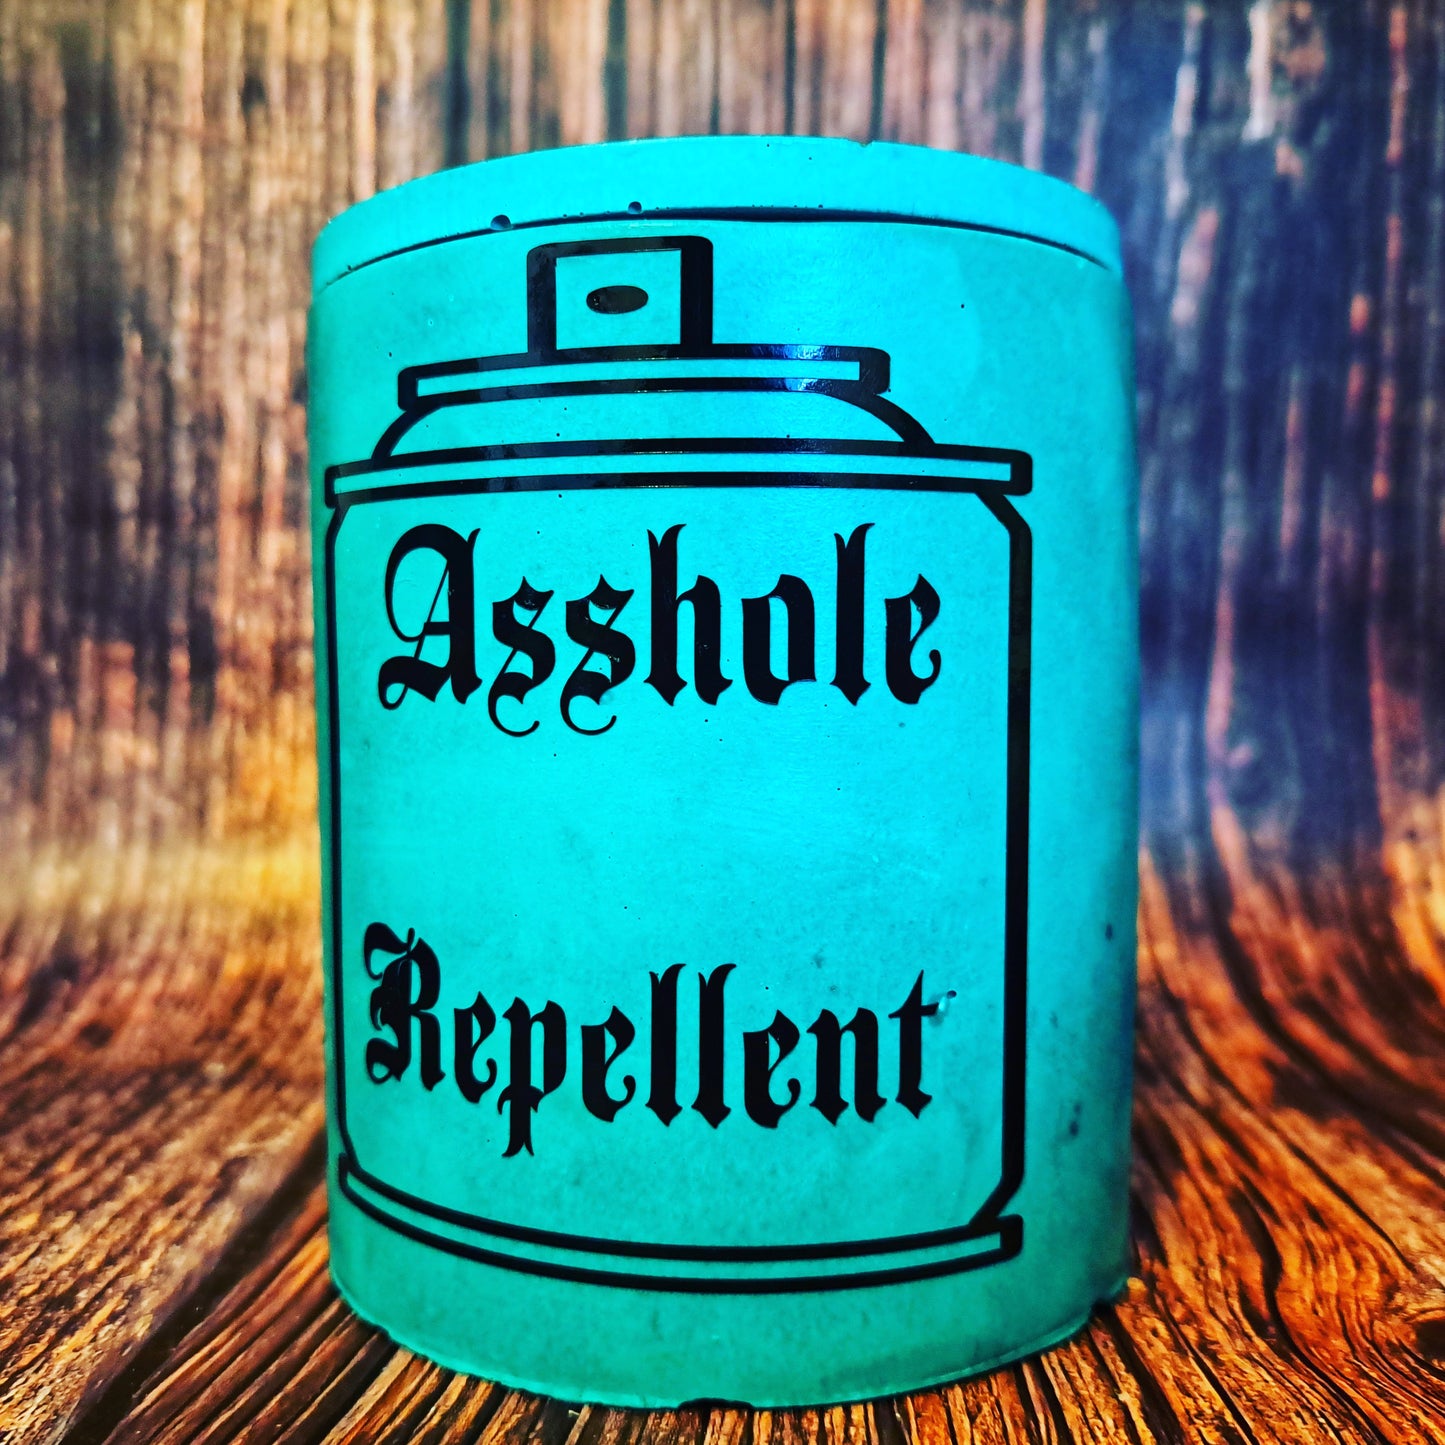 Asshole Repellent